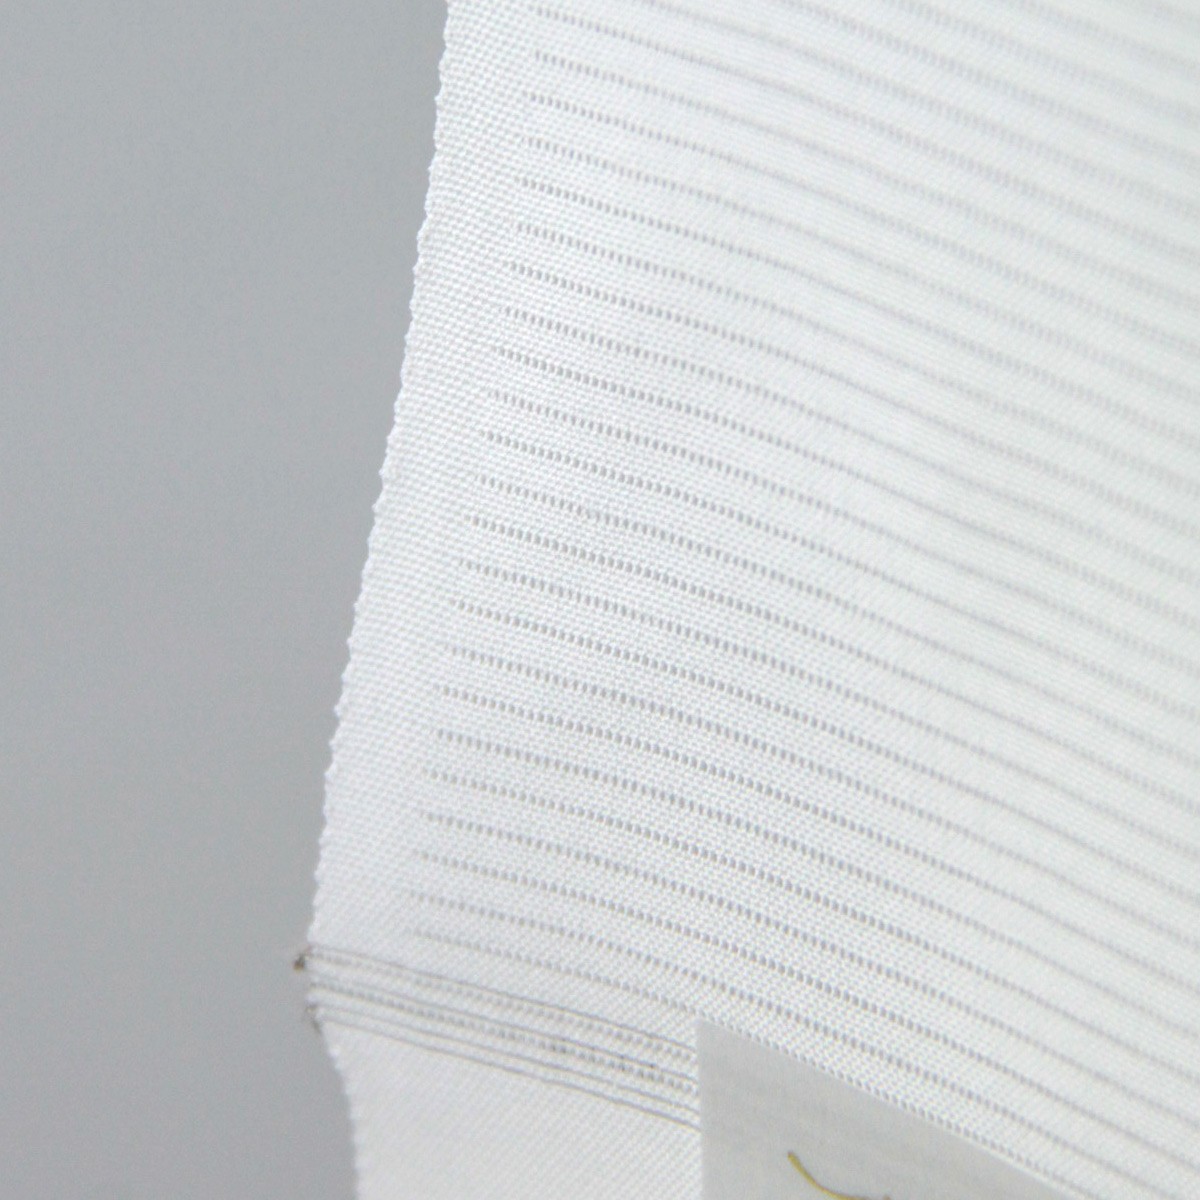 駒絽長襦袢 手縫い仕立て付き 正絹 -6- 皇室献上絹 ピュアホワイト 白 